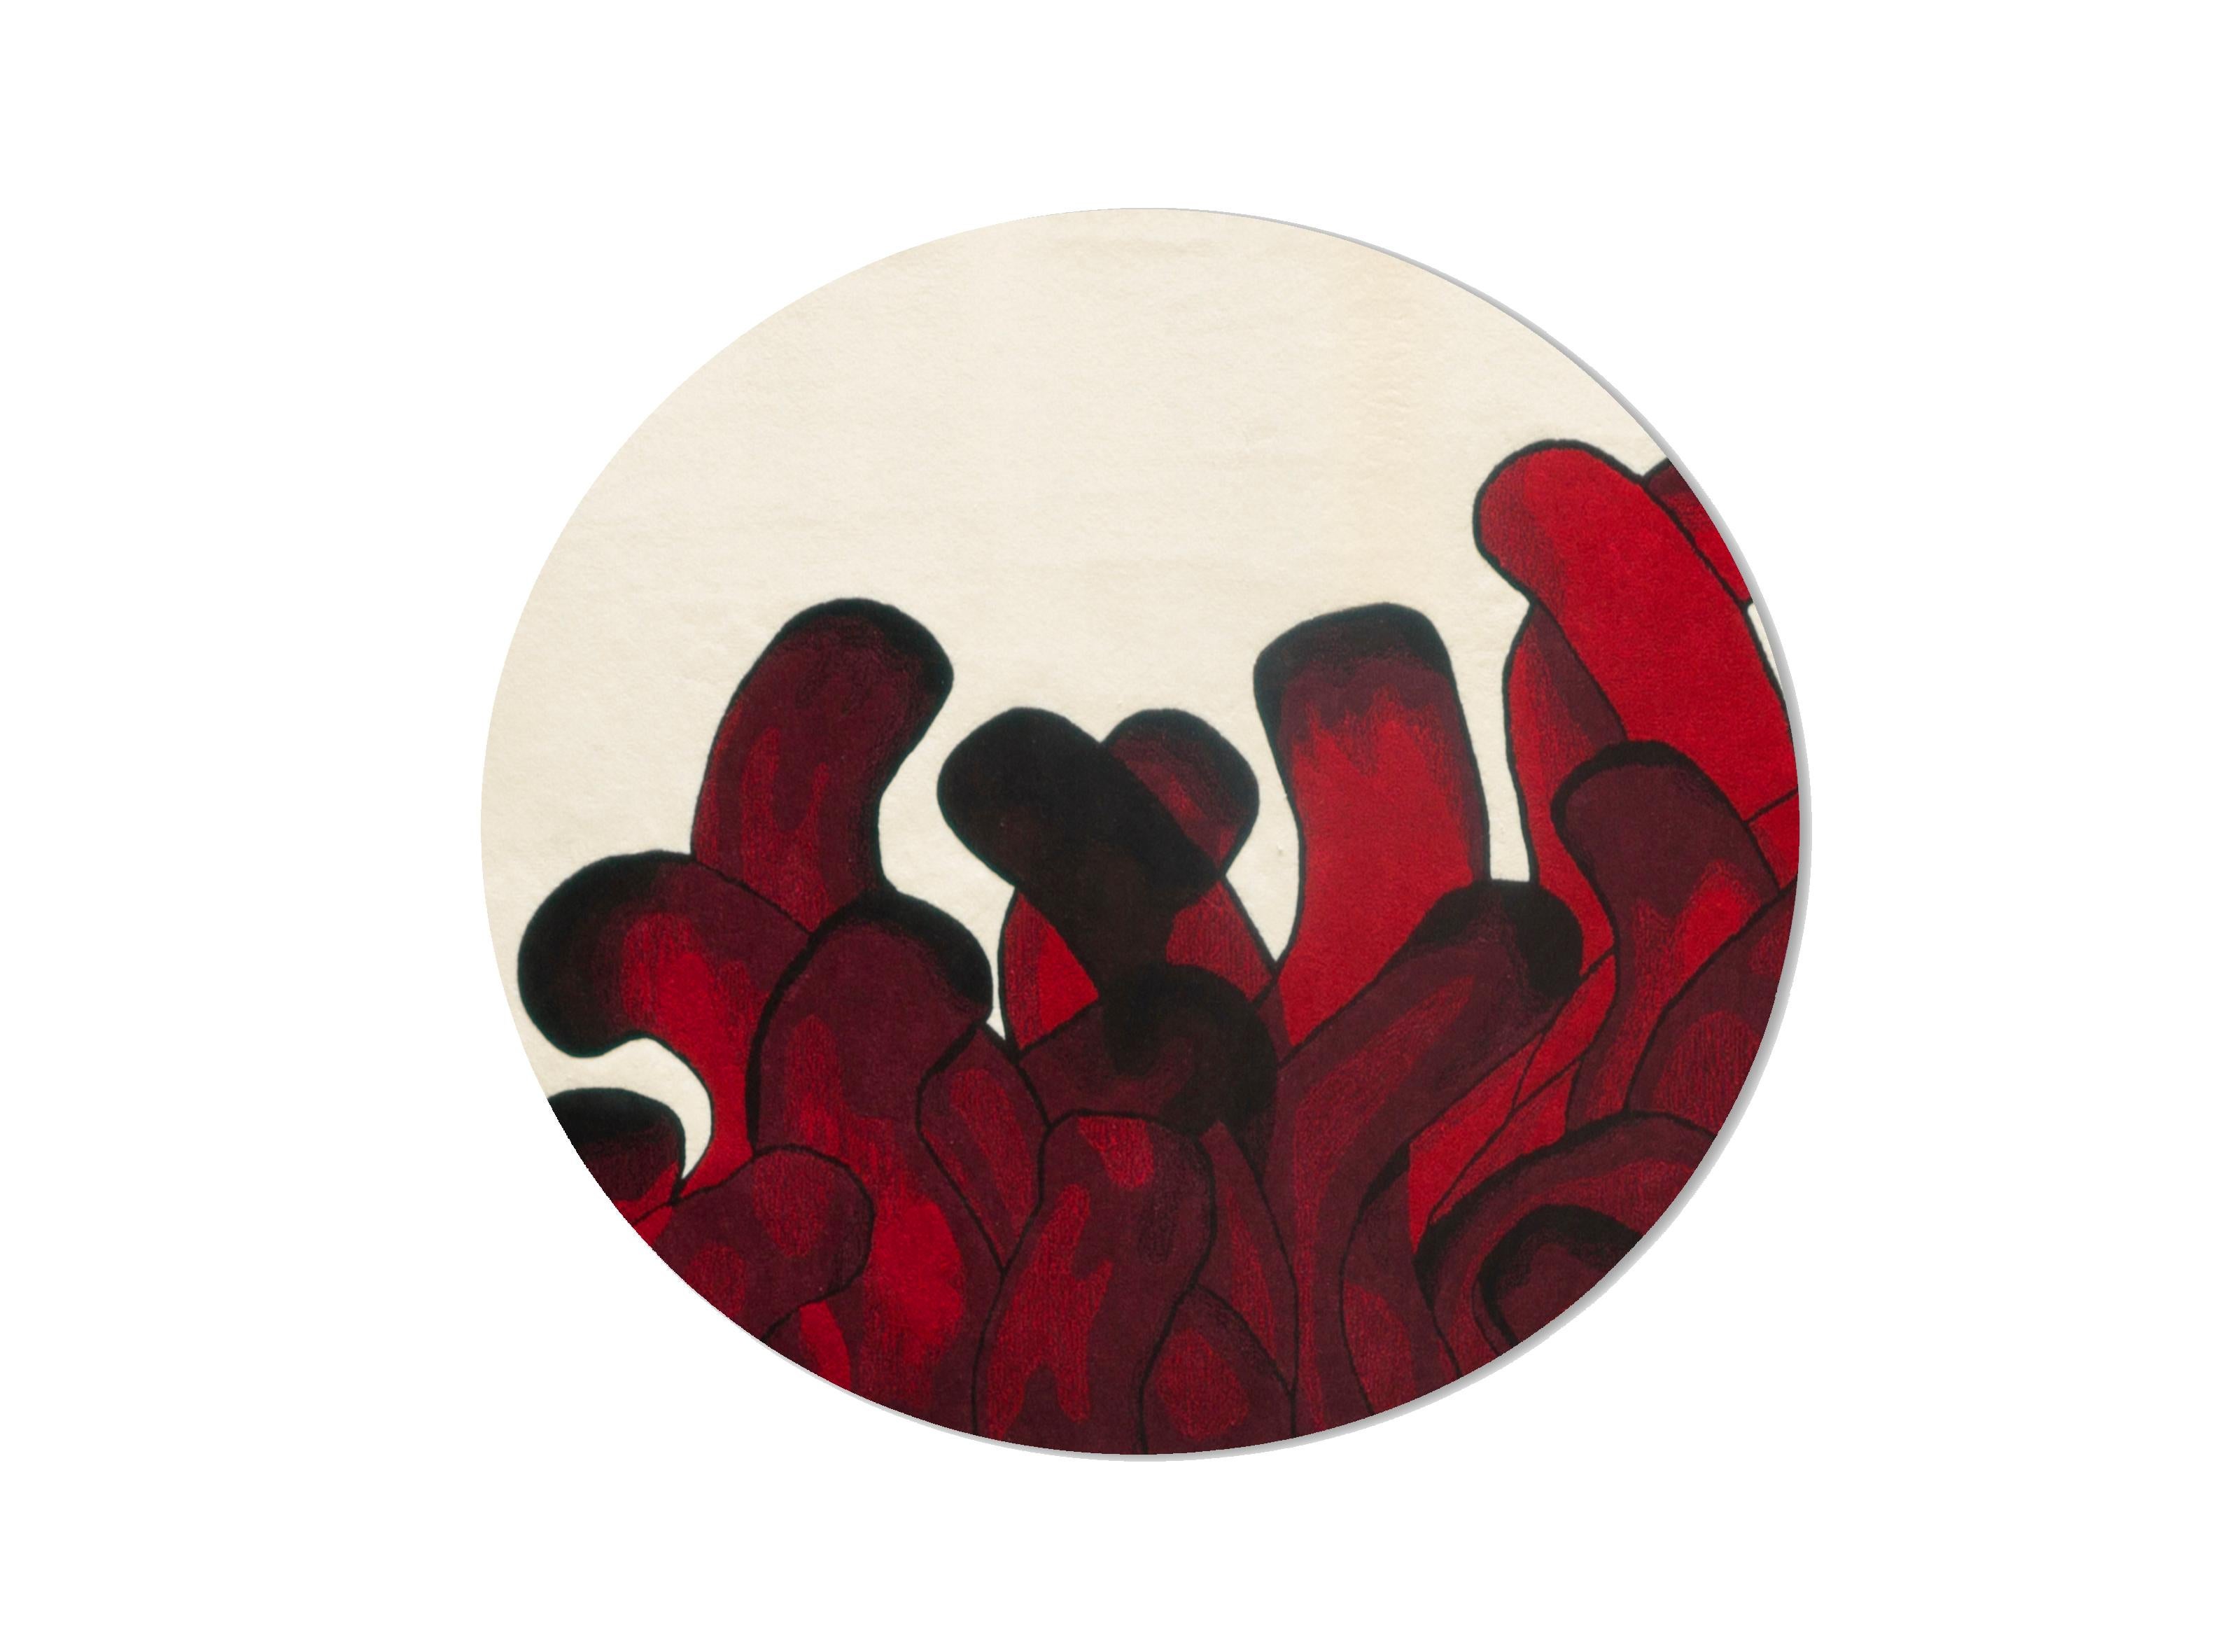 Roter Anémone-Teppich François Dumas
Anemone ist ein Teppich, der von einem Gemälde inspiriert wurde, in dem die Pinselstriche die Bewegungen von Seeanemonen nachahmen. Der Teppich wird von Kunsthandwerkern in Portugal handgefertigt, die die Wolle